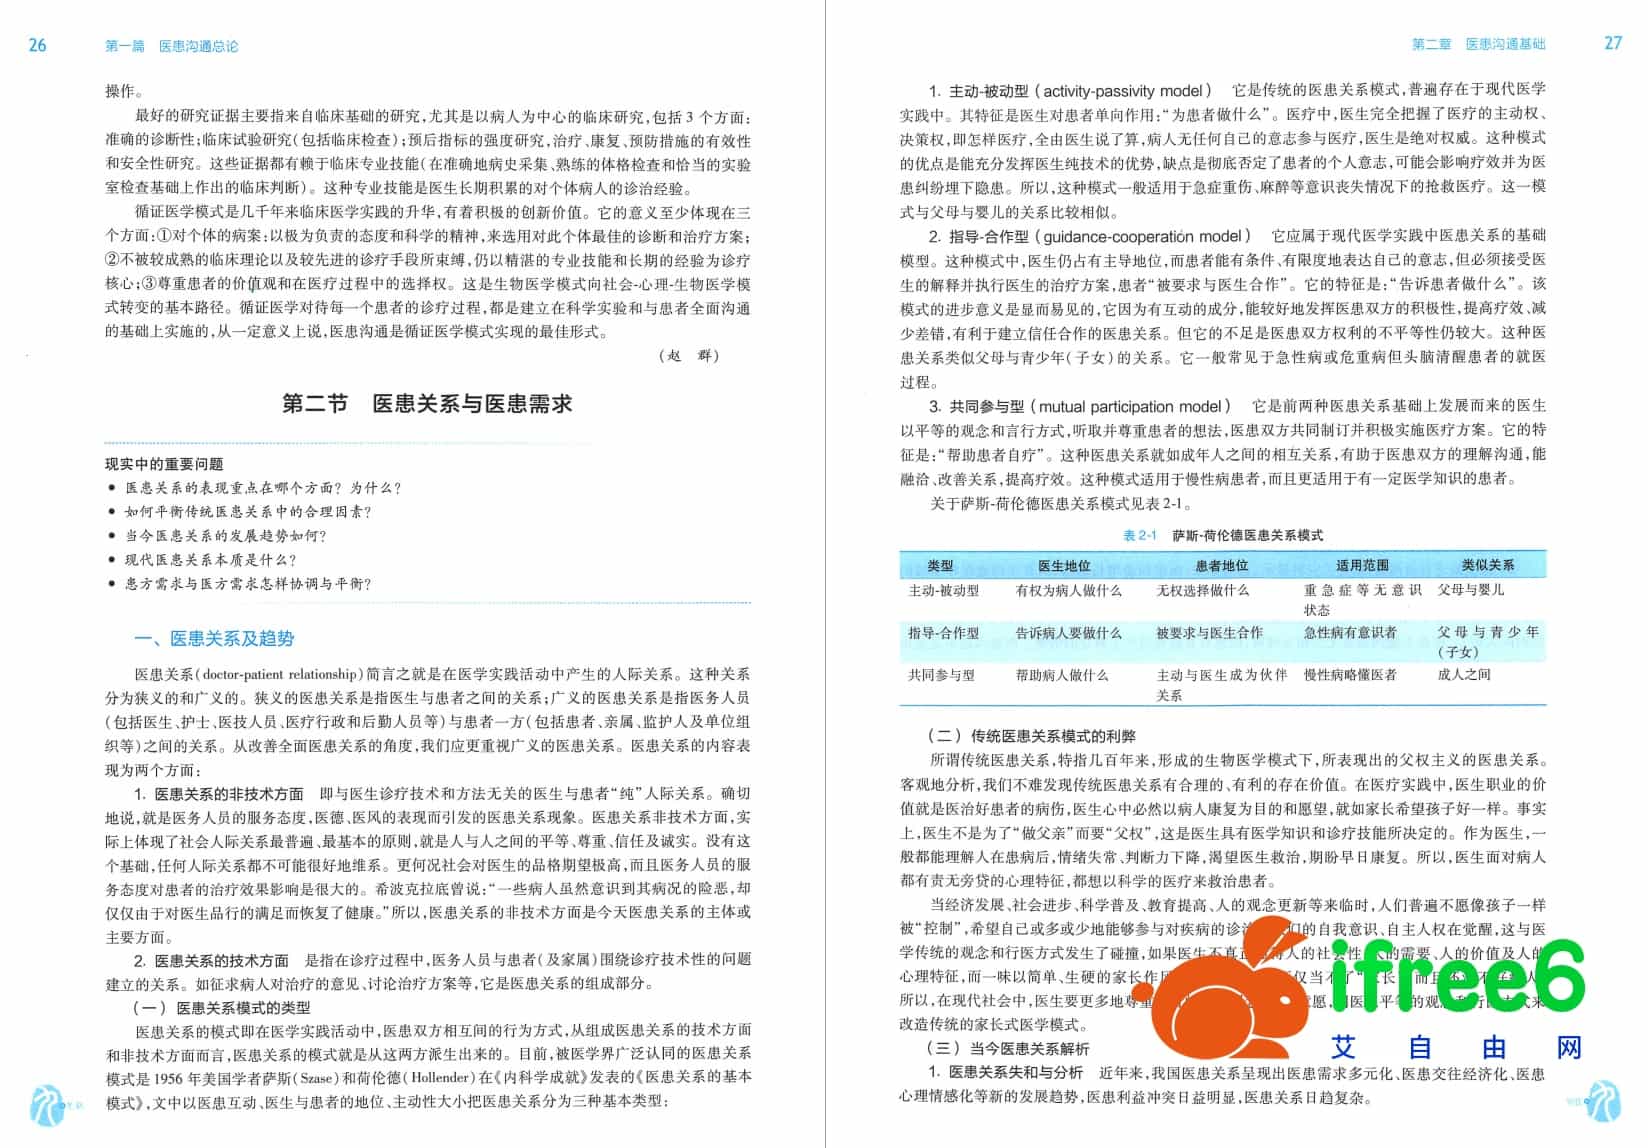 《医患沟通》第2版_王锦帆,尹梅主编pdf | 艾自由网